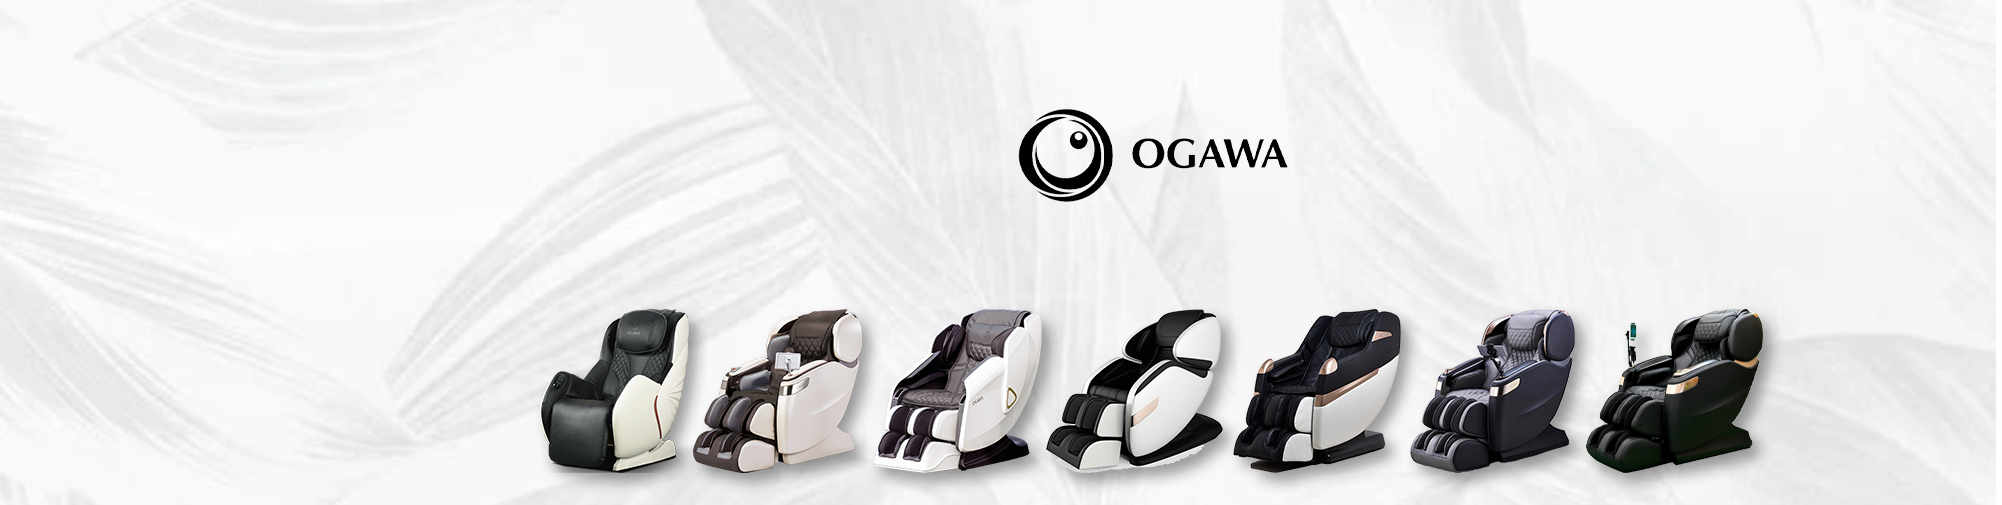 OGAWA | Massage Chair World